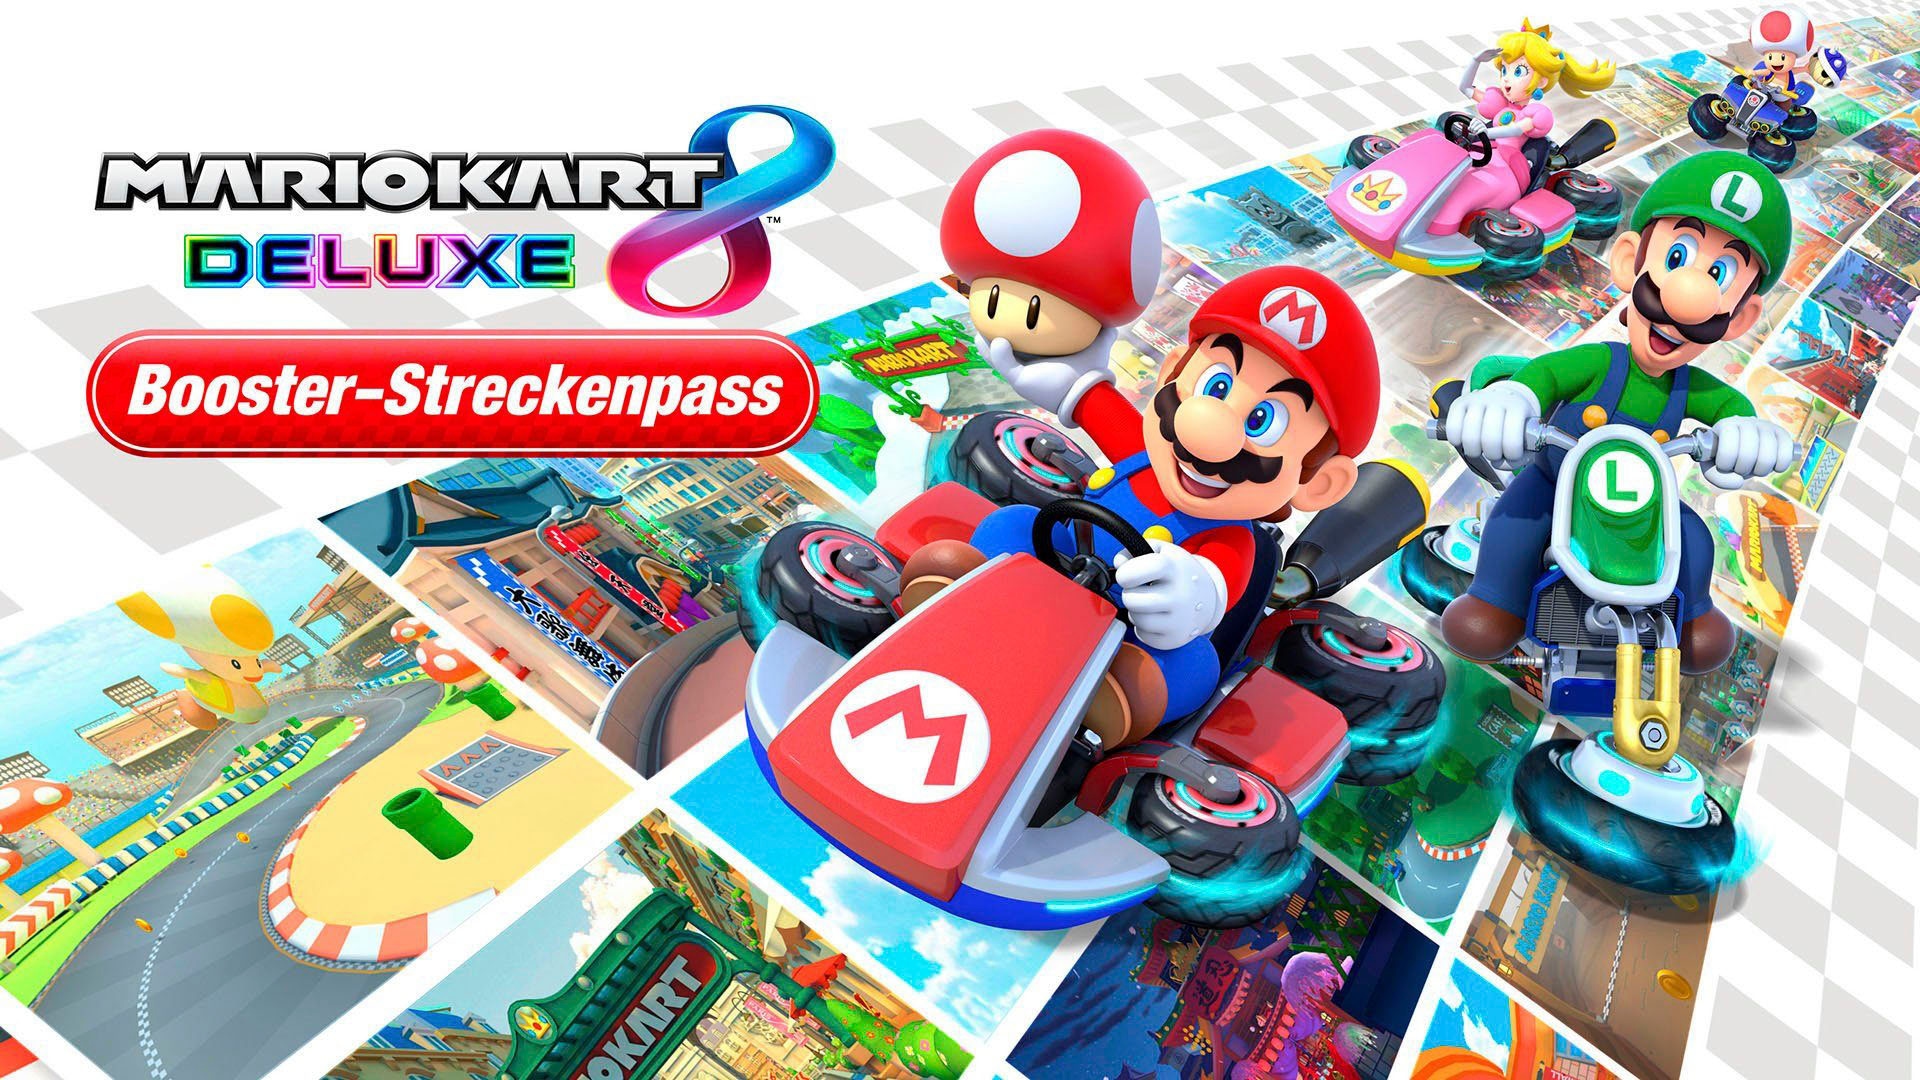 Nintendo Switch Spielekonsole, inkl. Mario Kart 8 Deluxe und Booster-Streckenpass